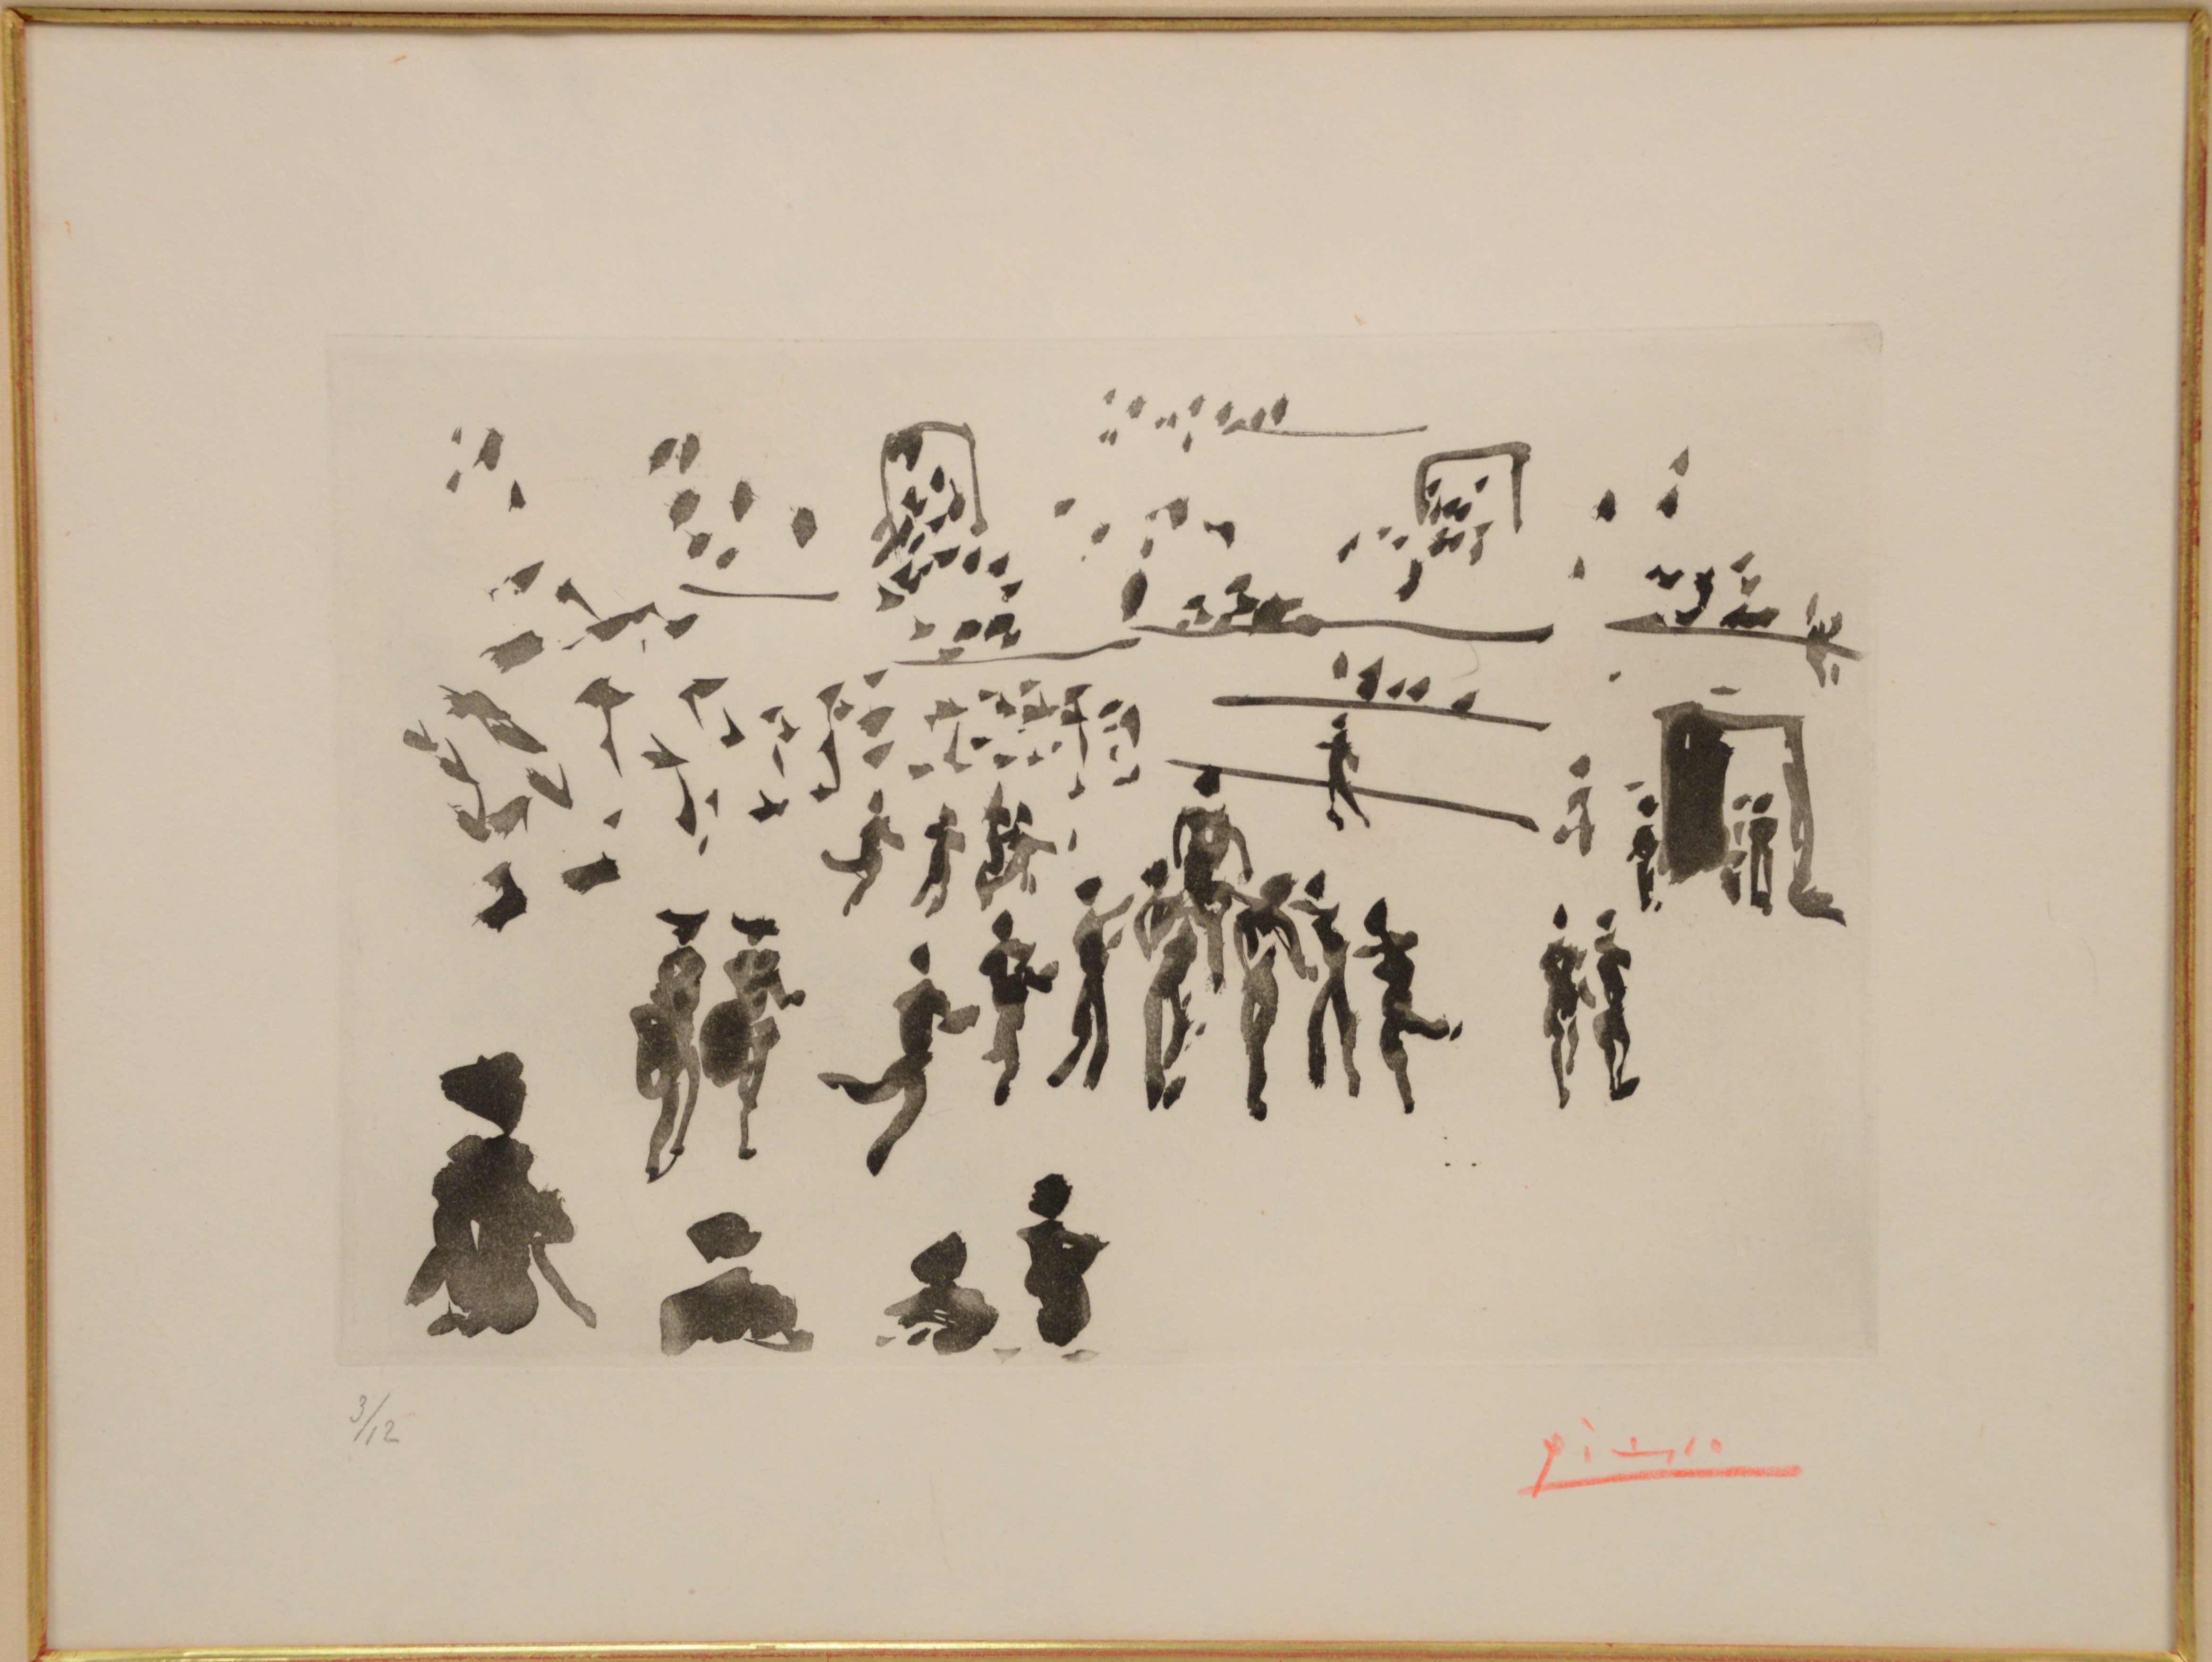 P. Picasso (1881-1973), aquatint, El Torero Sale En Hombros de los Aficionados, estimated at $4,000-10,000.